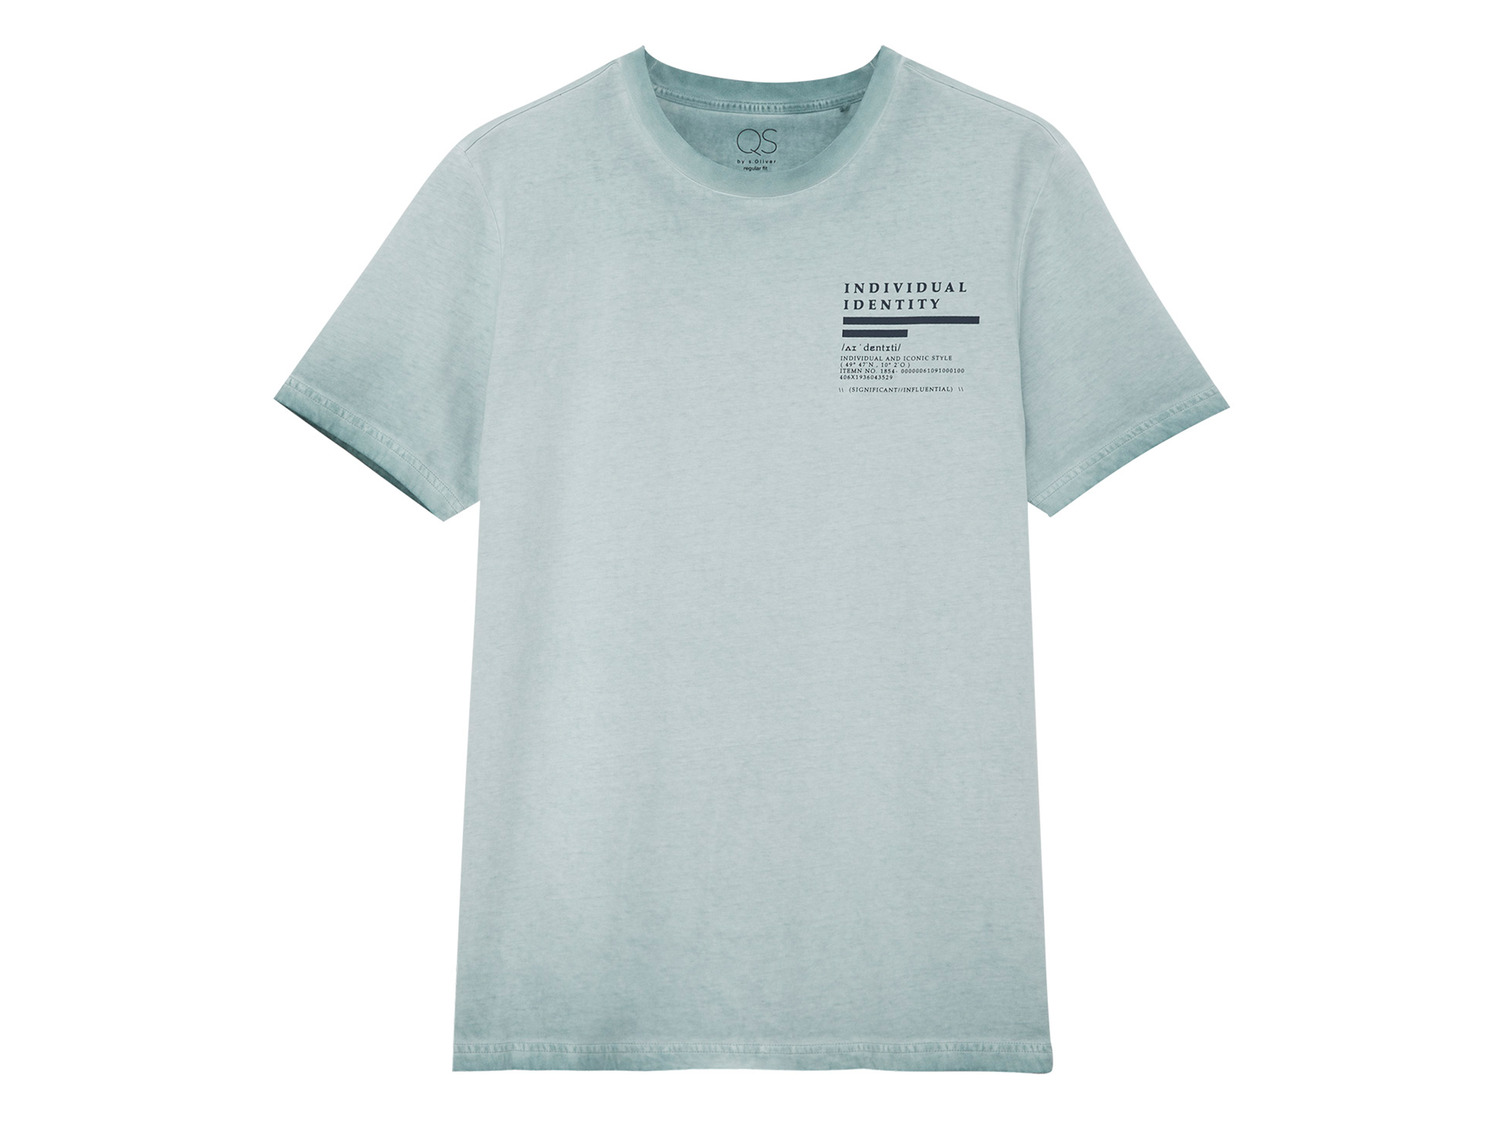 T-Shirt by Baumwolle s.Oliver Herren QS aus reiner